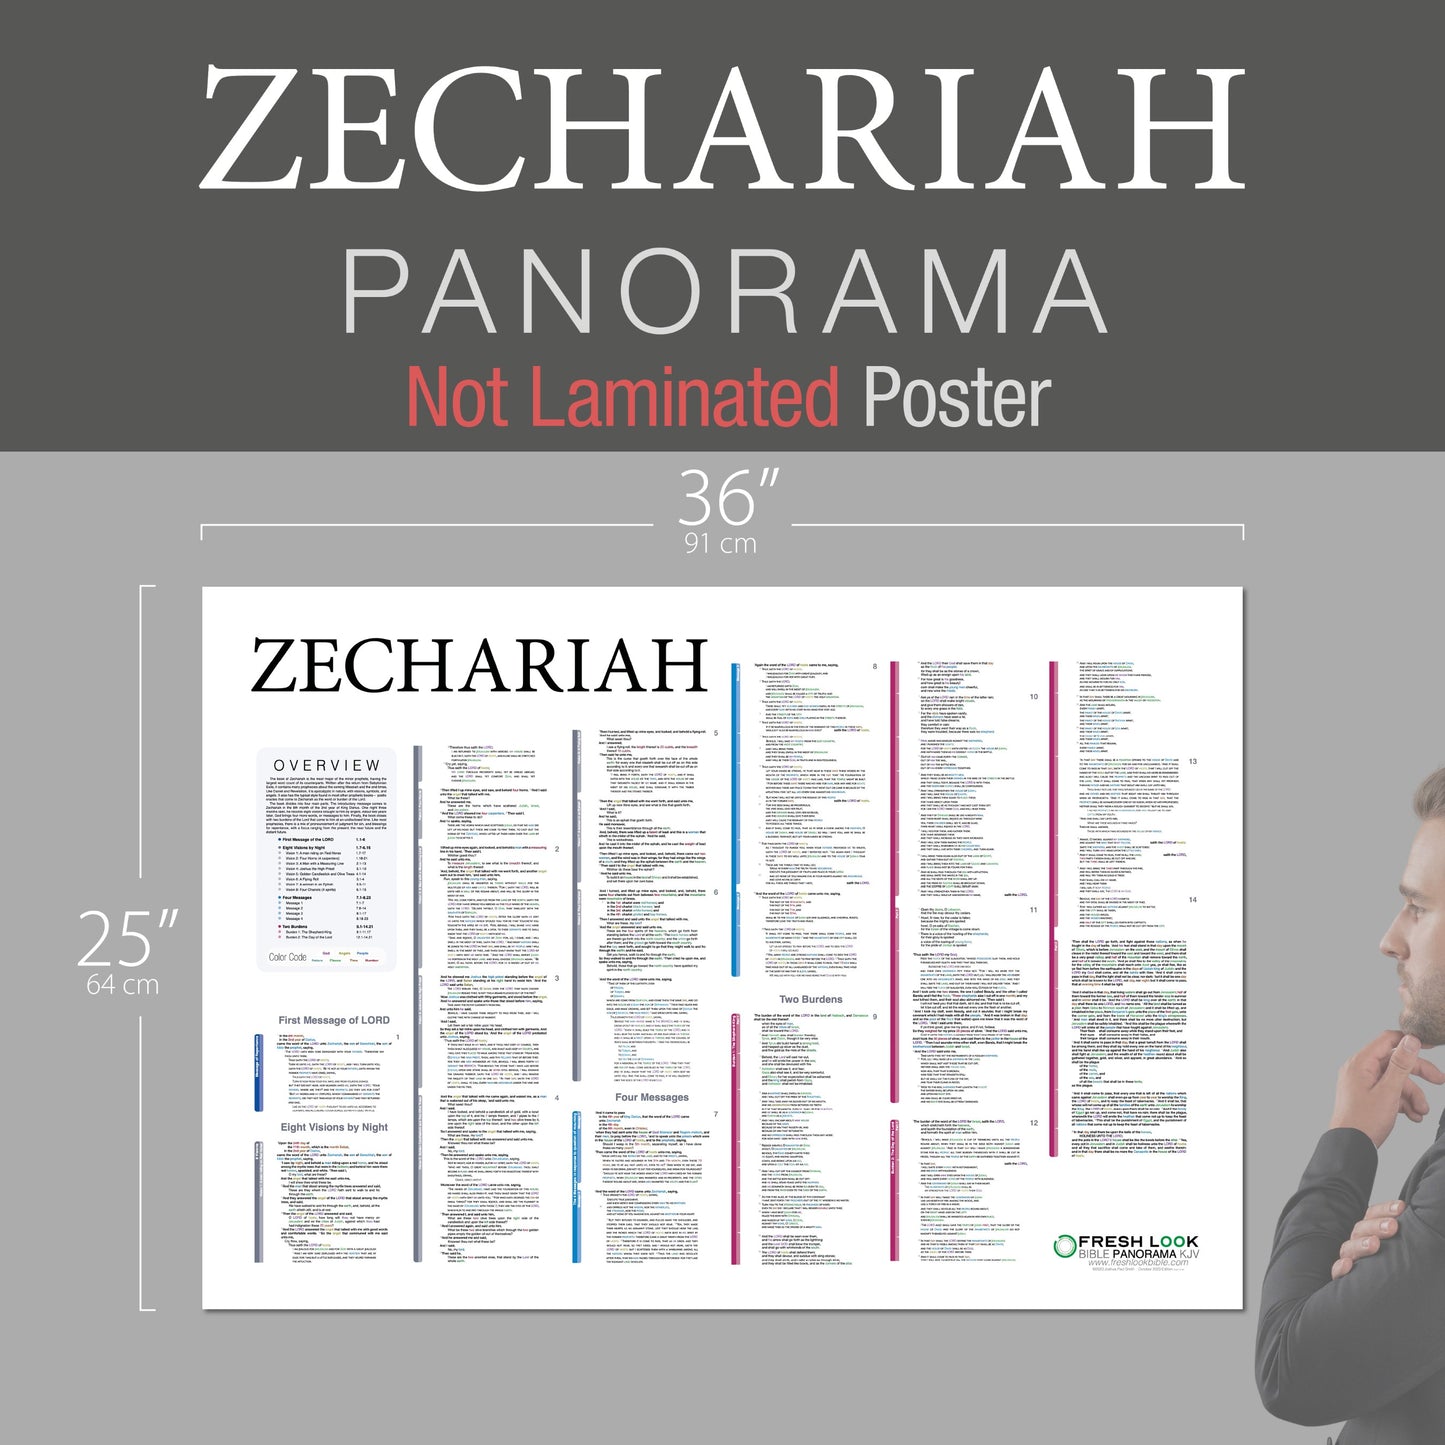 Zechariah Panorama Not Laminated